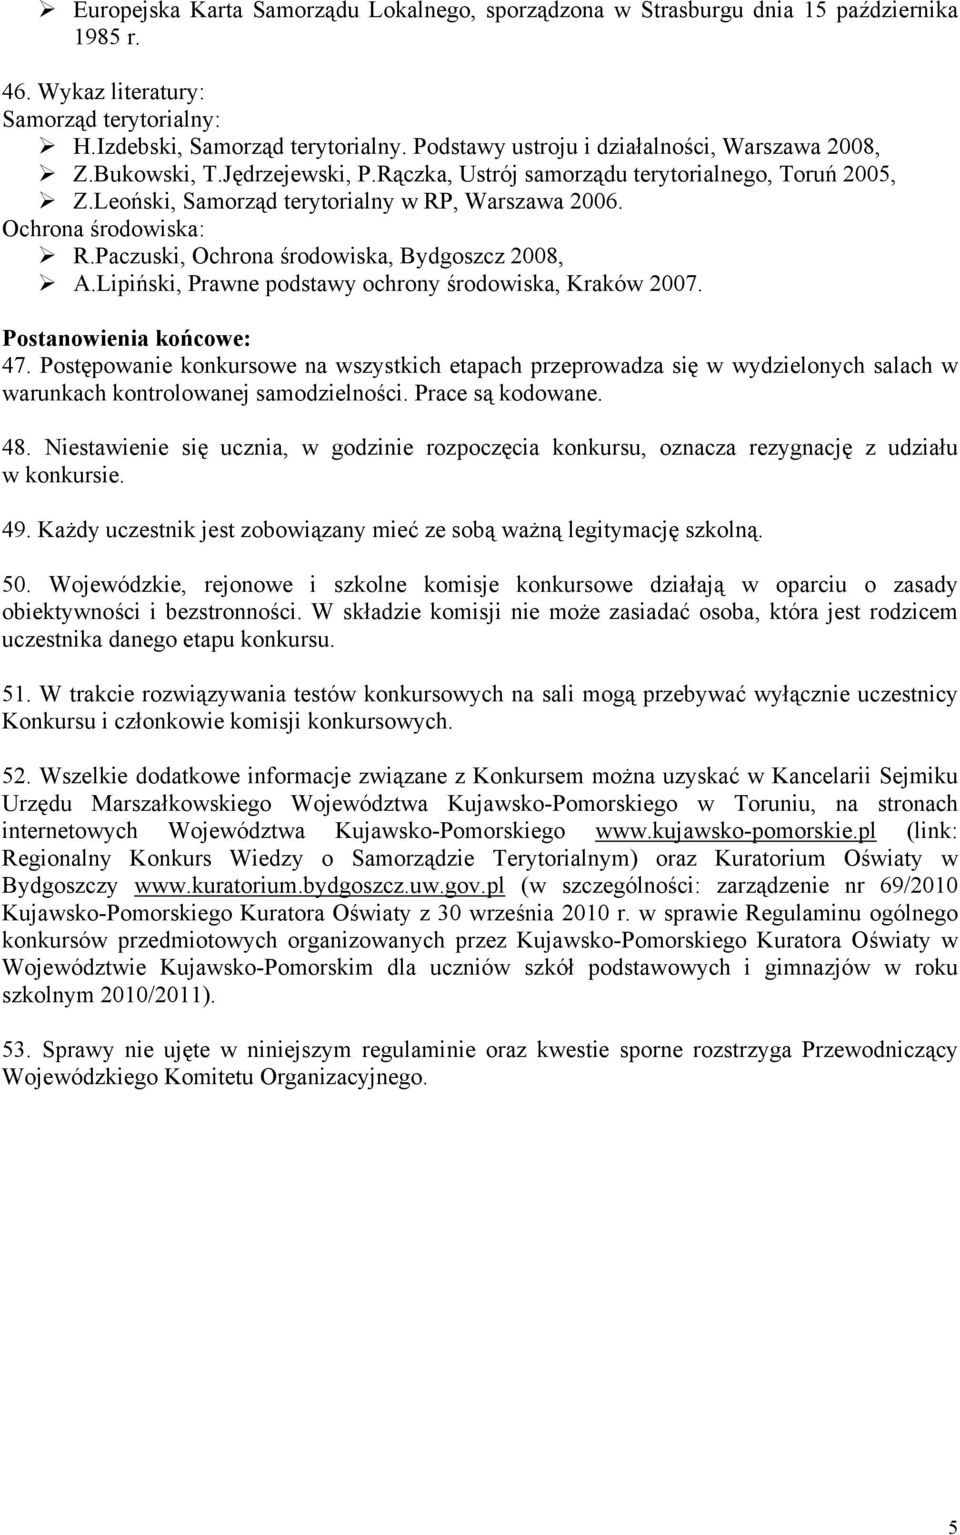 Ochrona środowiska: R.Paczuski, Ochrona środowiska, Bydgoszcz 2008, A.Lipiński, Prawne podstawy ochrony środowiska, Kraków 2007. Postanowienia końcowe: 47.